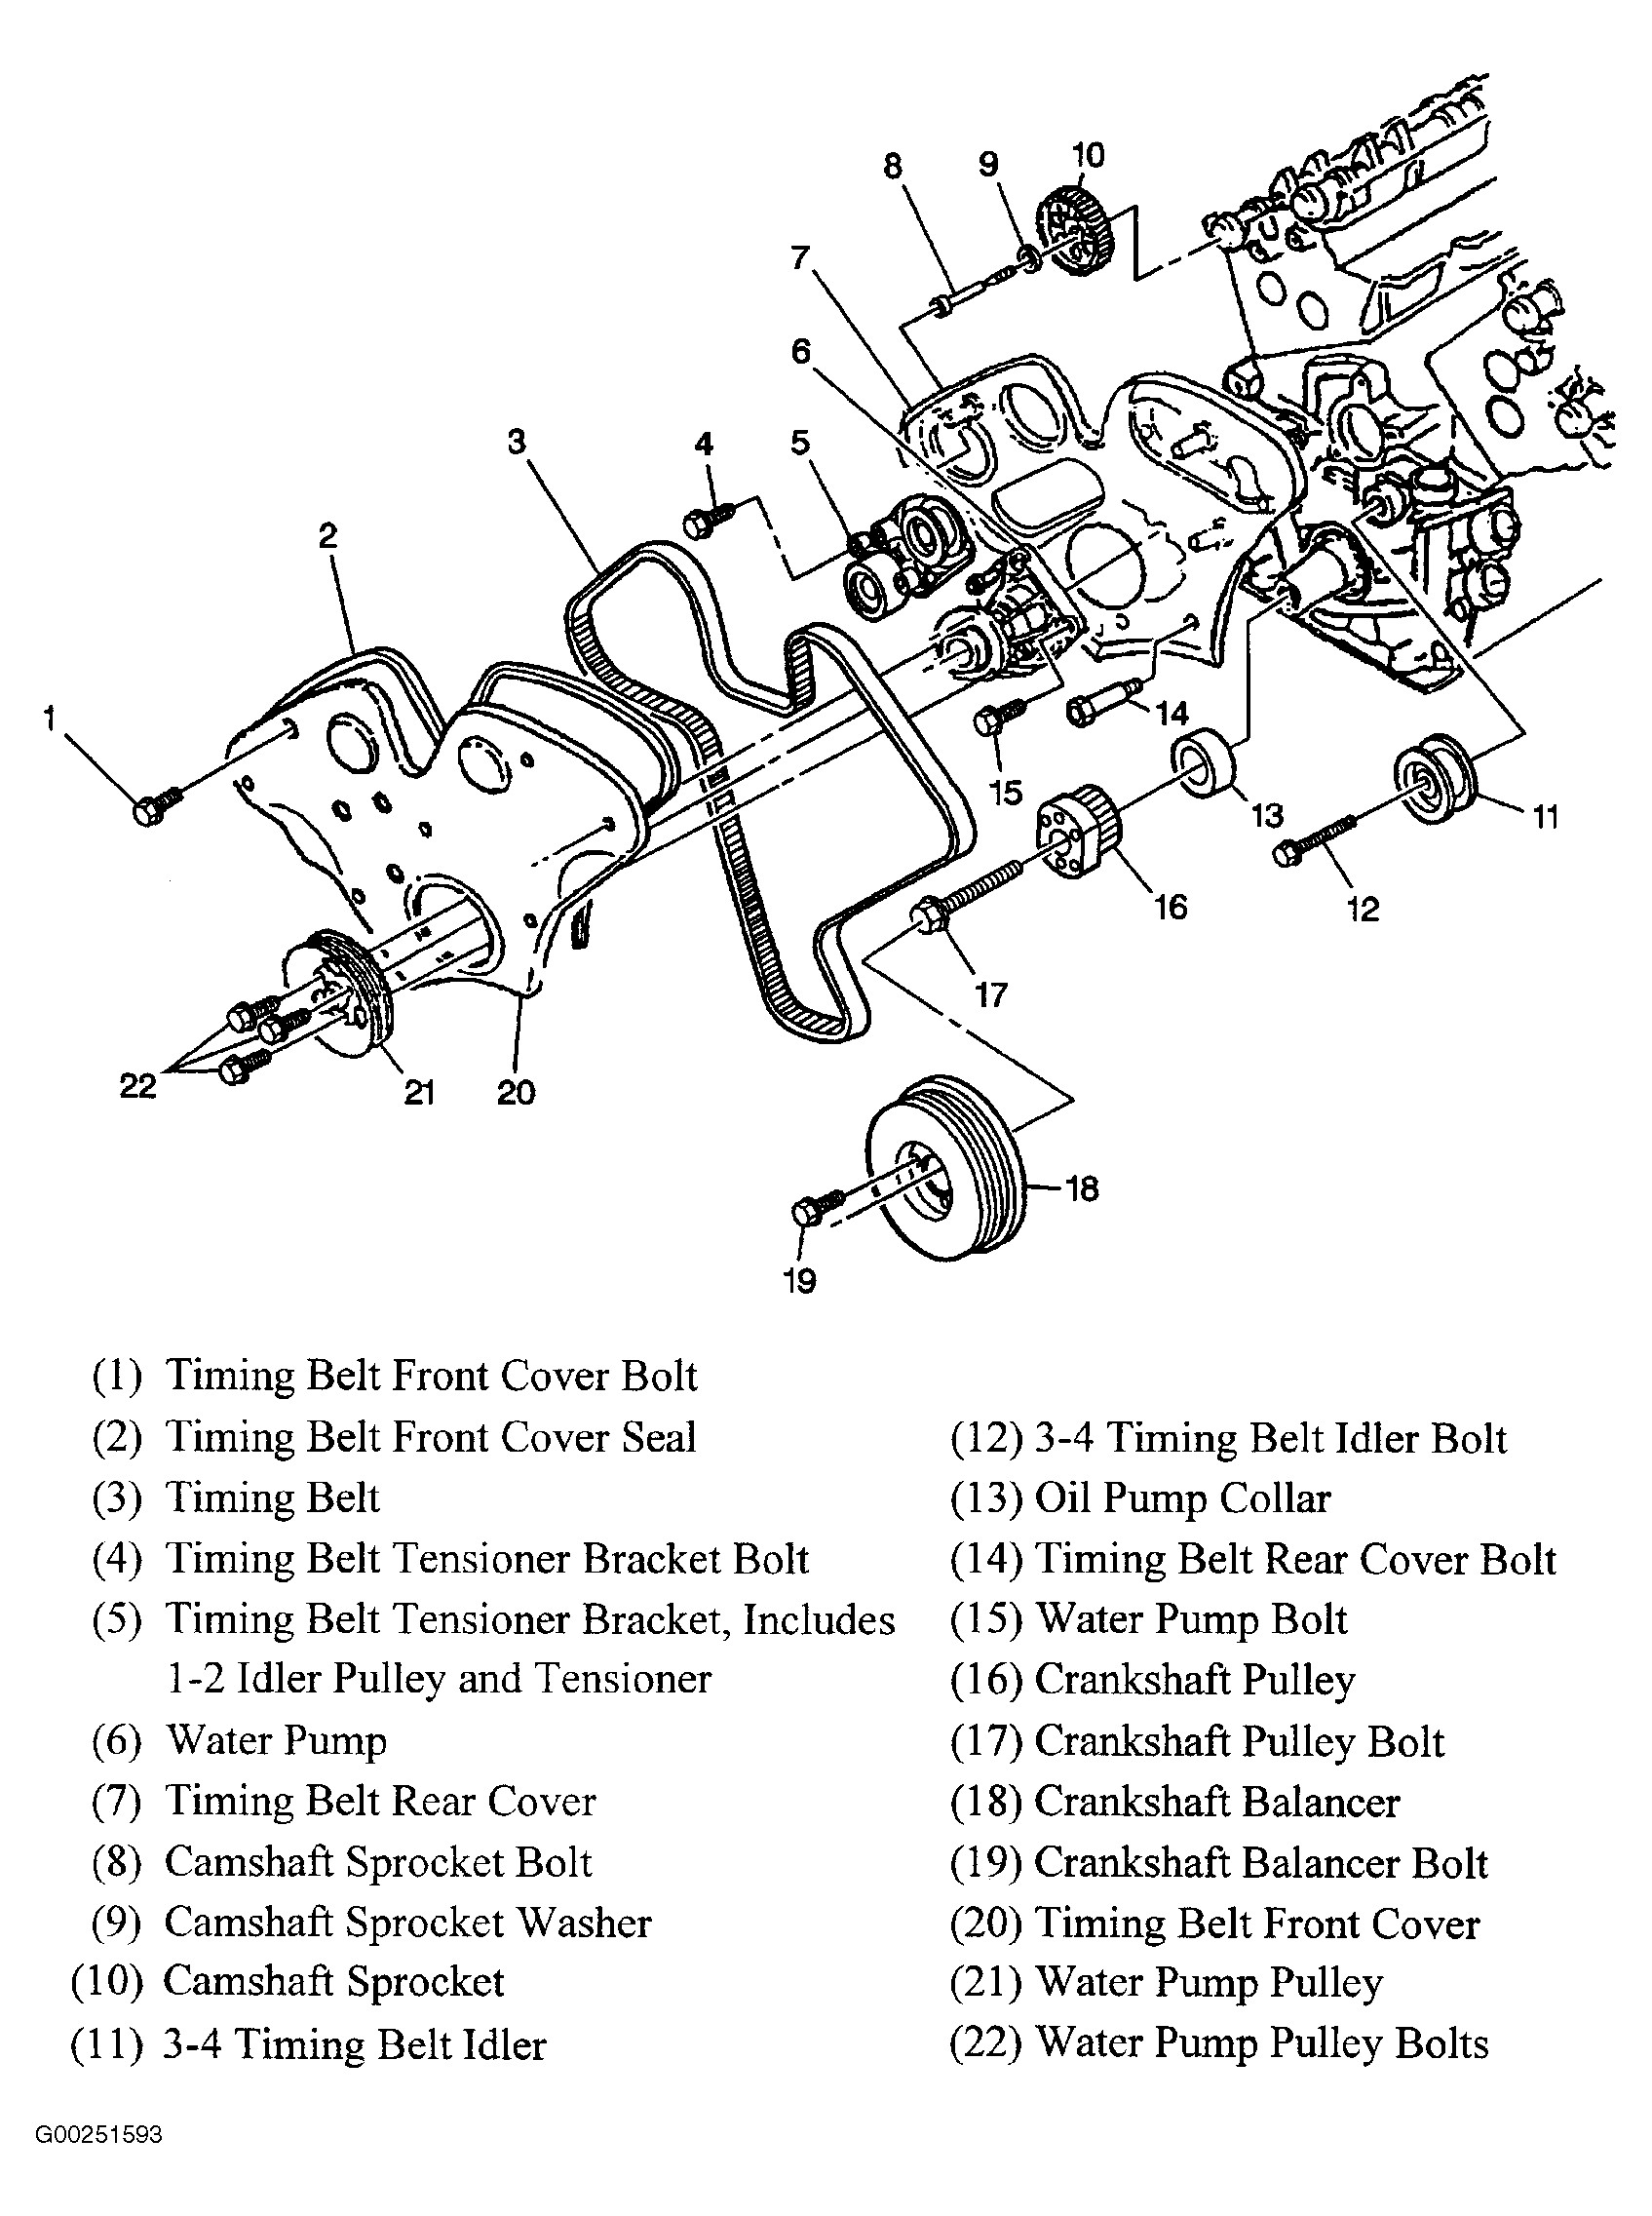 Automobile Parts Diagram 2003 Cadillac Cts Serpentine Belt Diagram Auto Of Automobile Parts Diagram